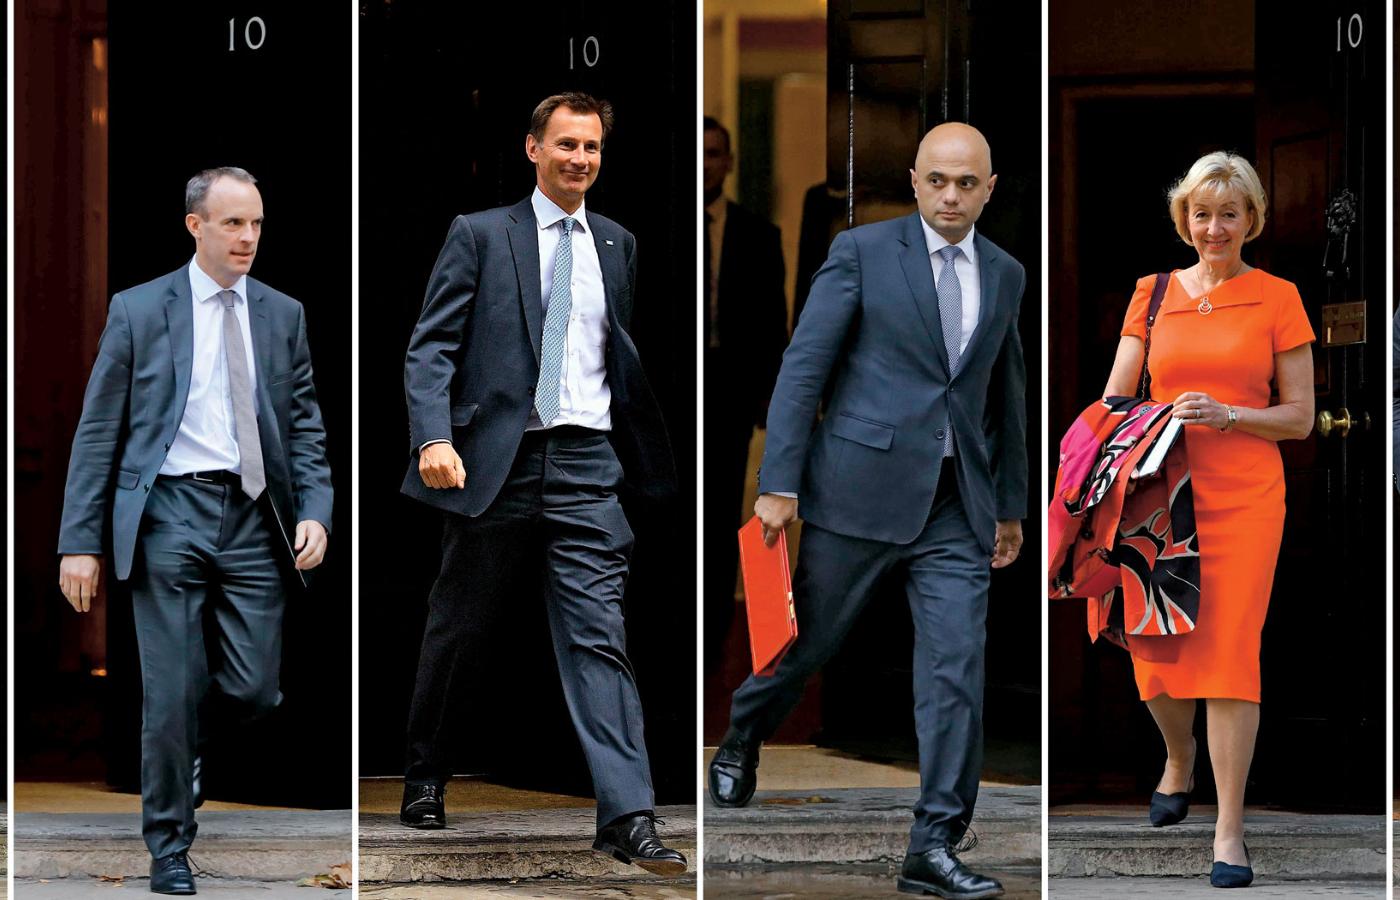 Od lewej: Michael Gove, Dominic Raab, Jeremy Hunt, Sajid Javid, Andrea Leadsom i Boris Johnson staną do walki o fotel lidera rządzących konserwatystów.